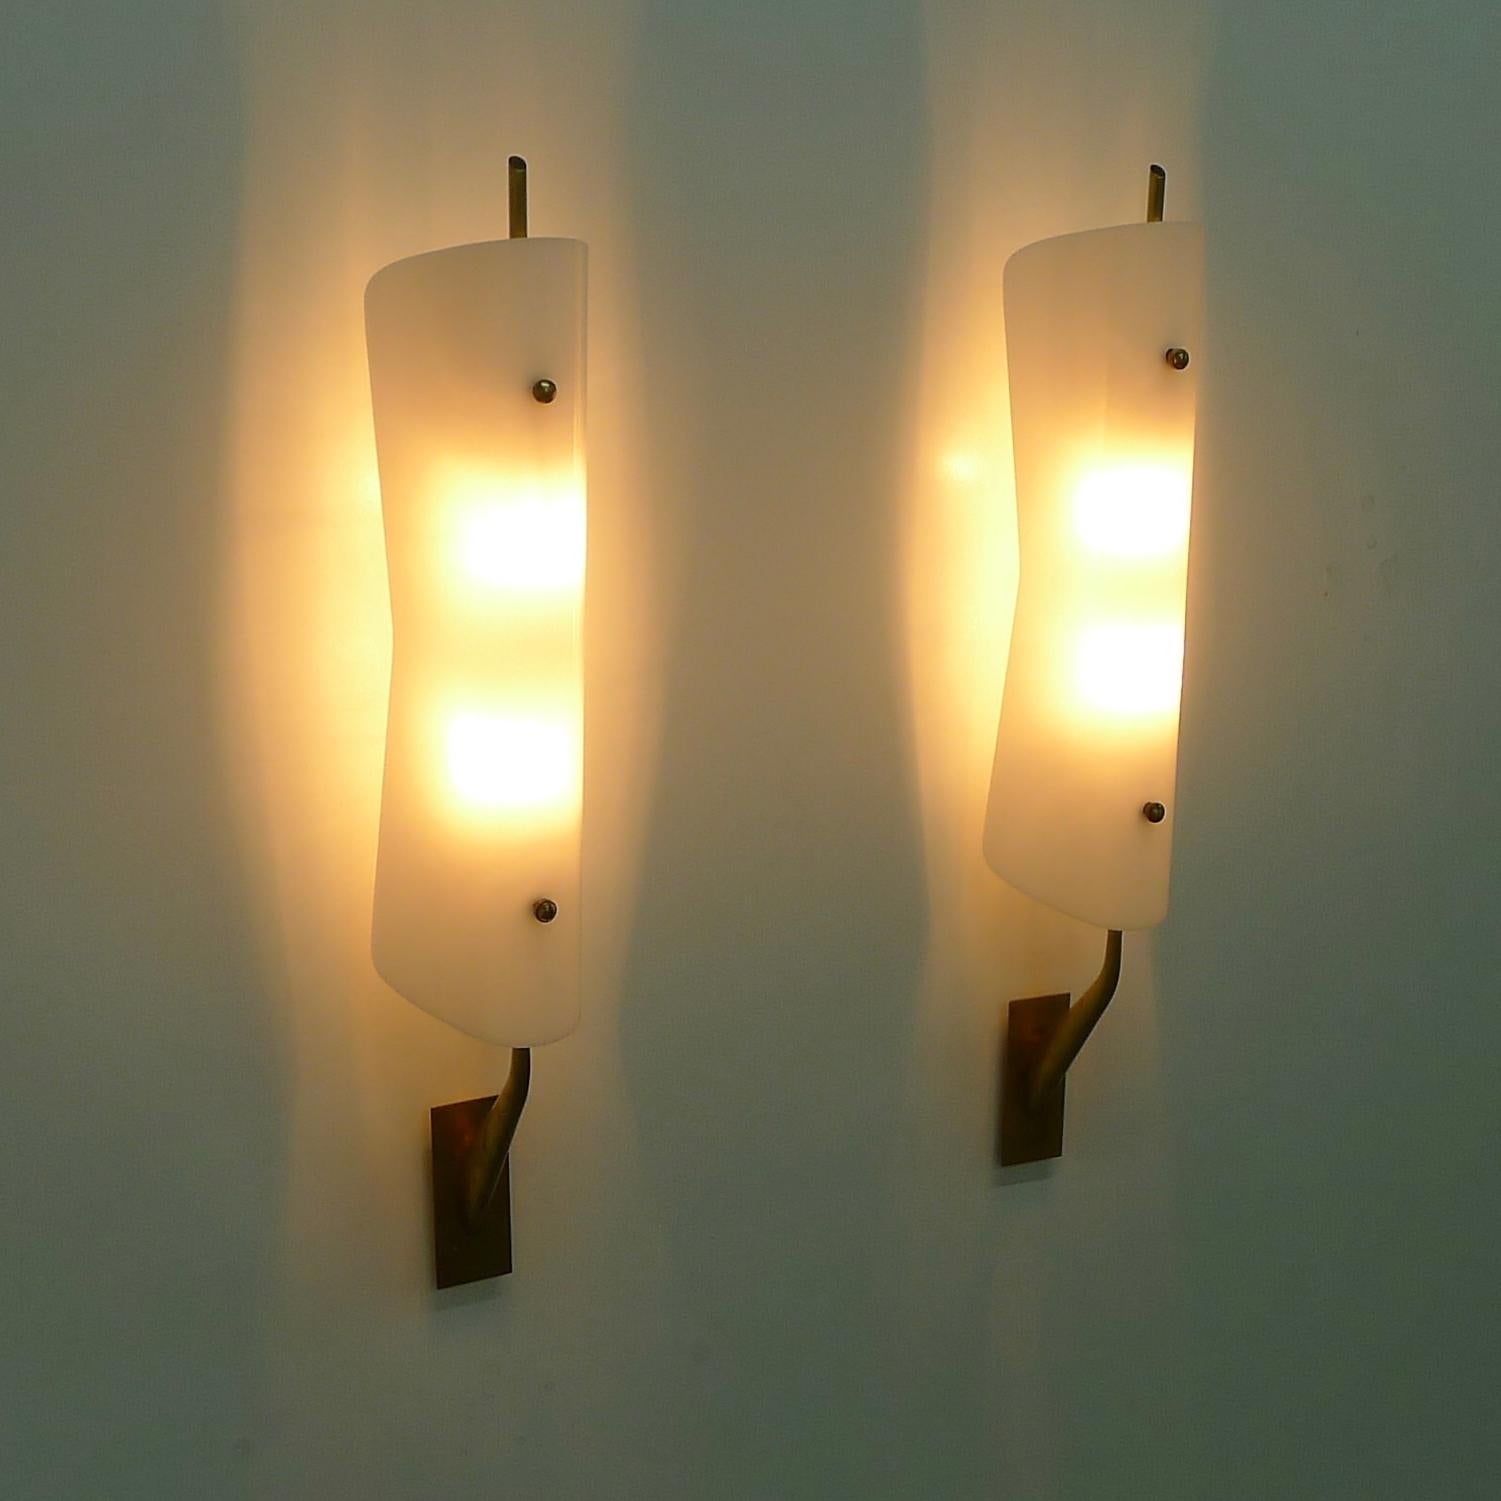 Ein Paar Wandapplikationen aus den 1950er Jahren, vermutlich von Stilnovo, Italien.

Jede Leuchte besteht aus einem undurchsichtigen, weißen Acrylschirm in attraktiver, taillierter Form, der das Licht von zwei Glühbirnen auf einem Messingschaft